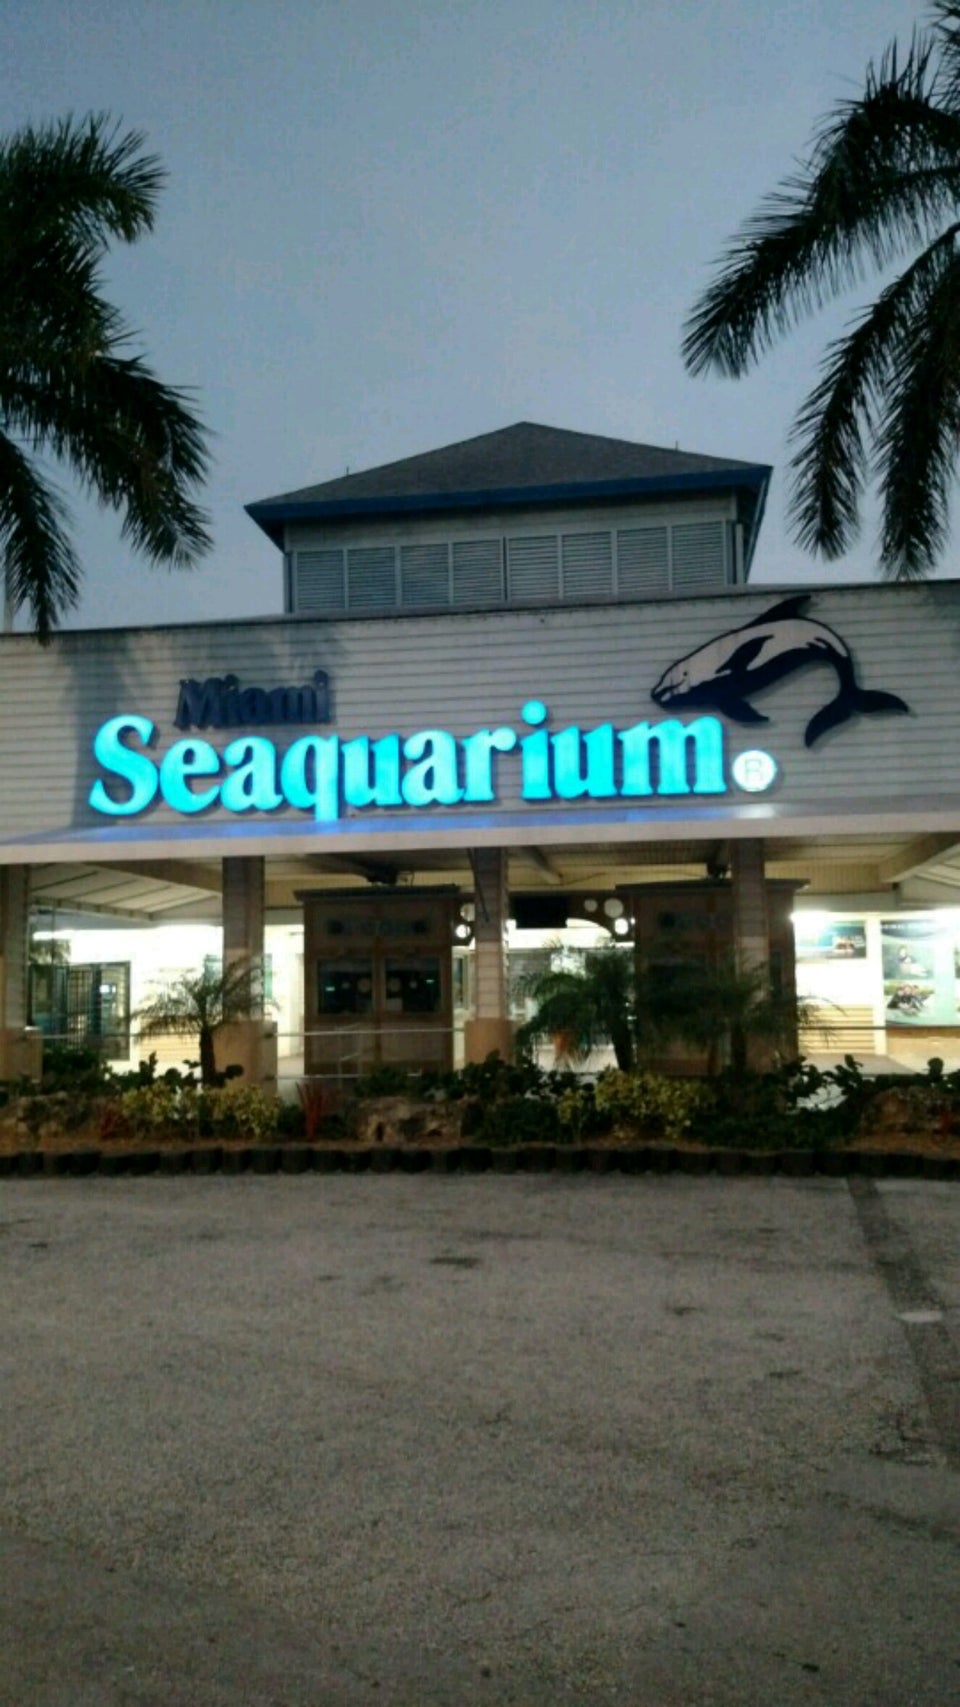 Photo of Miami Seaquarium